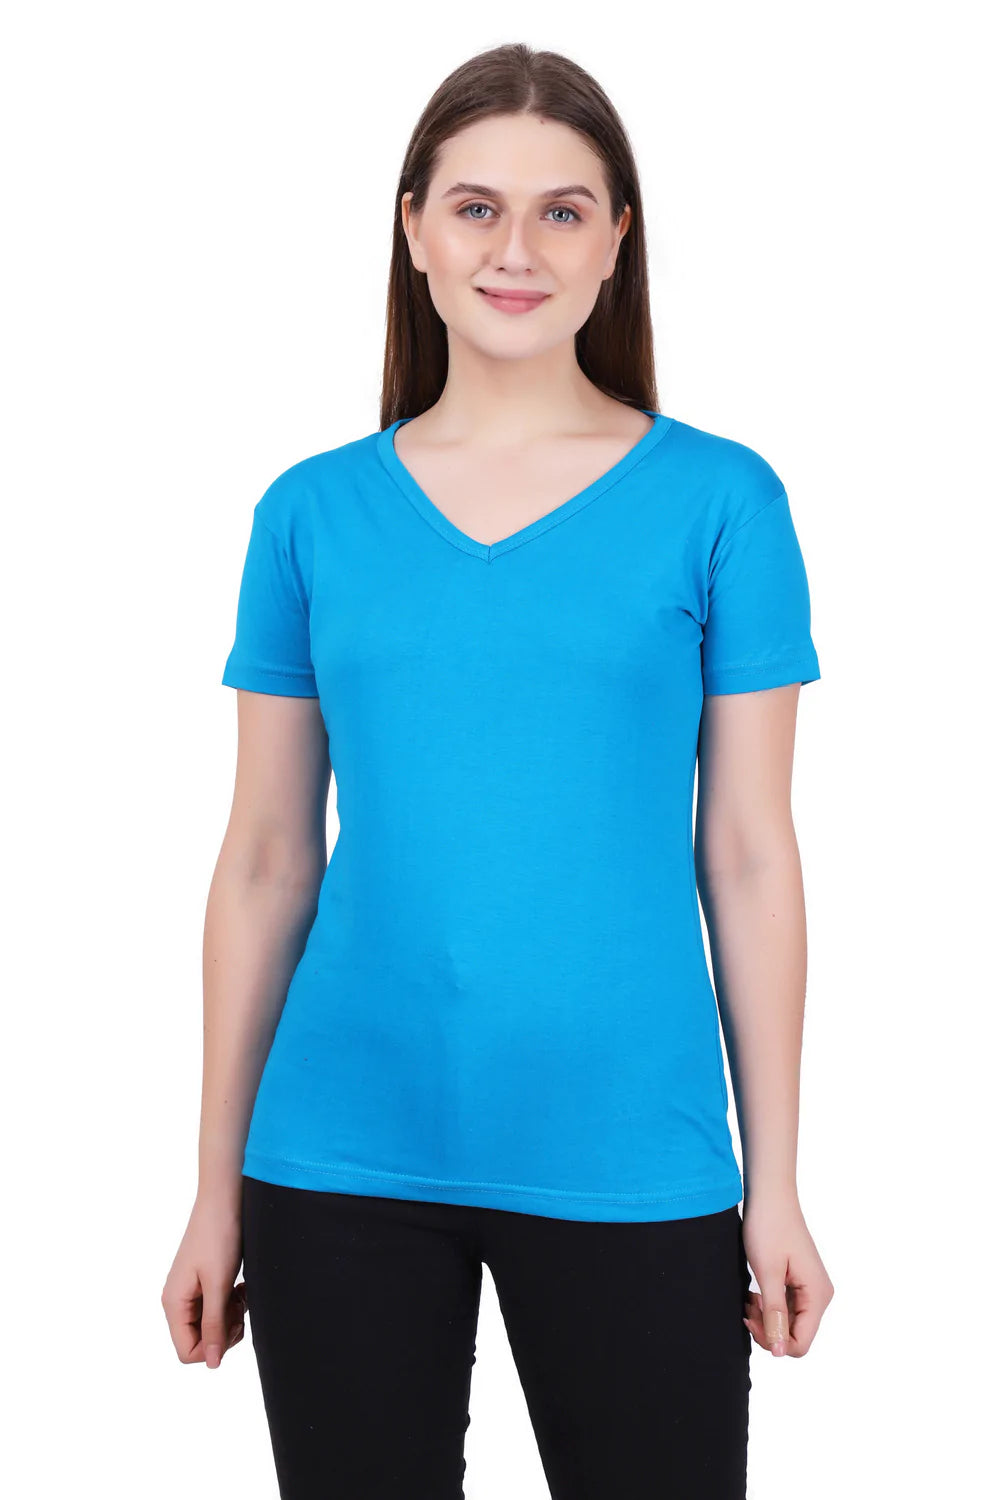 Women's Cotton Plain V Neck Half Sleeve Blue Color T-Shirt